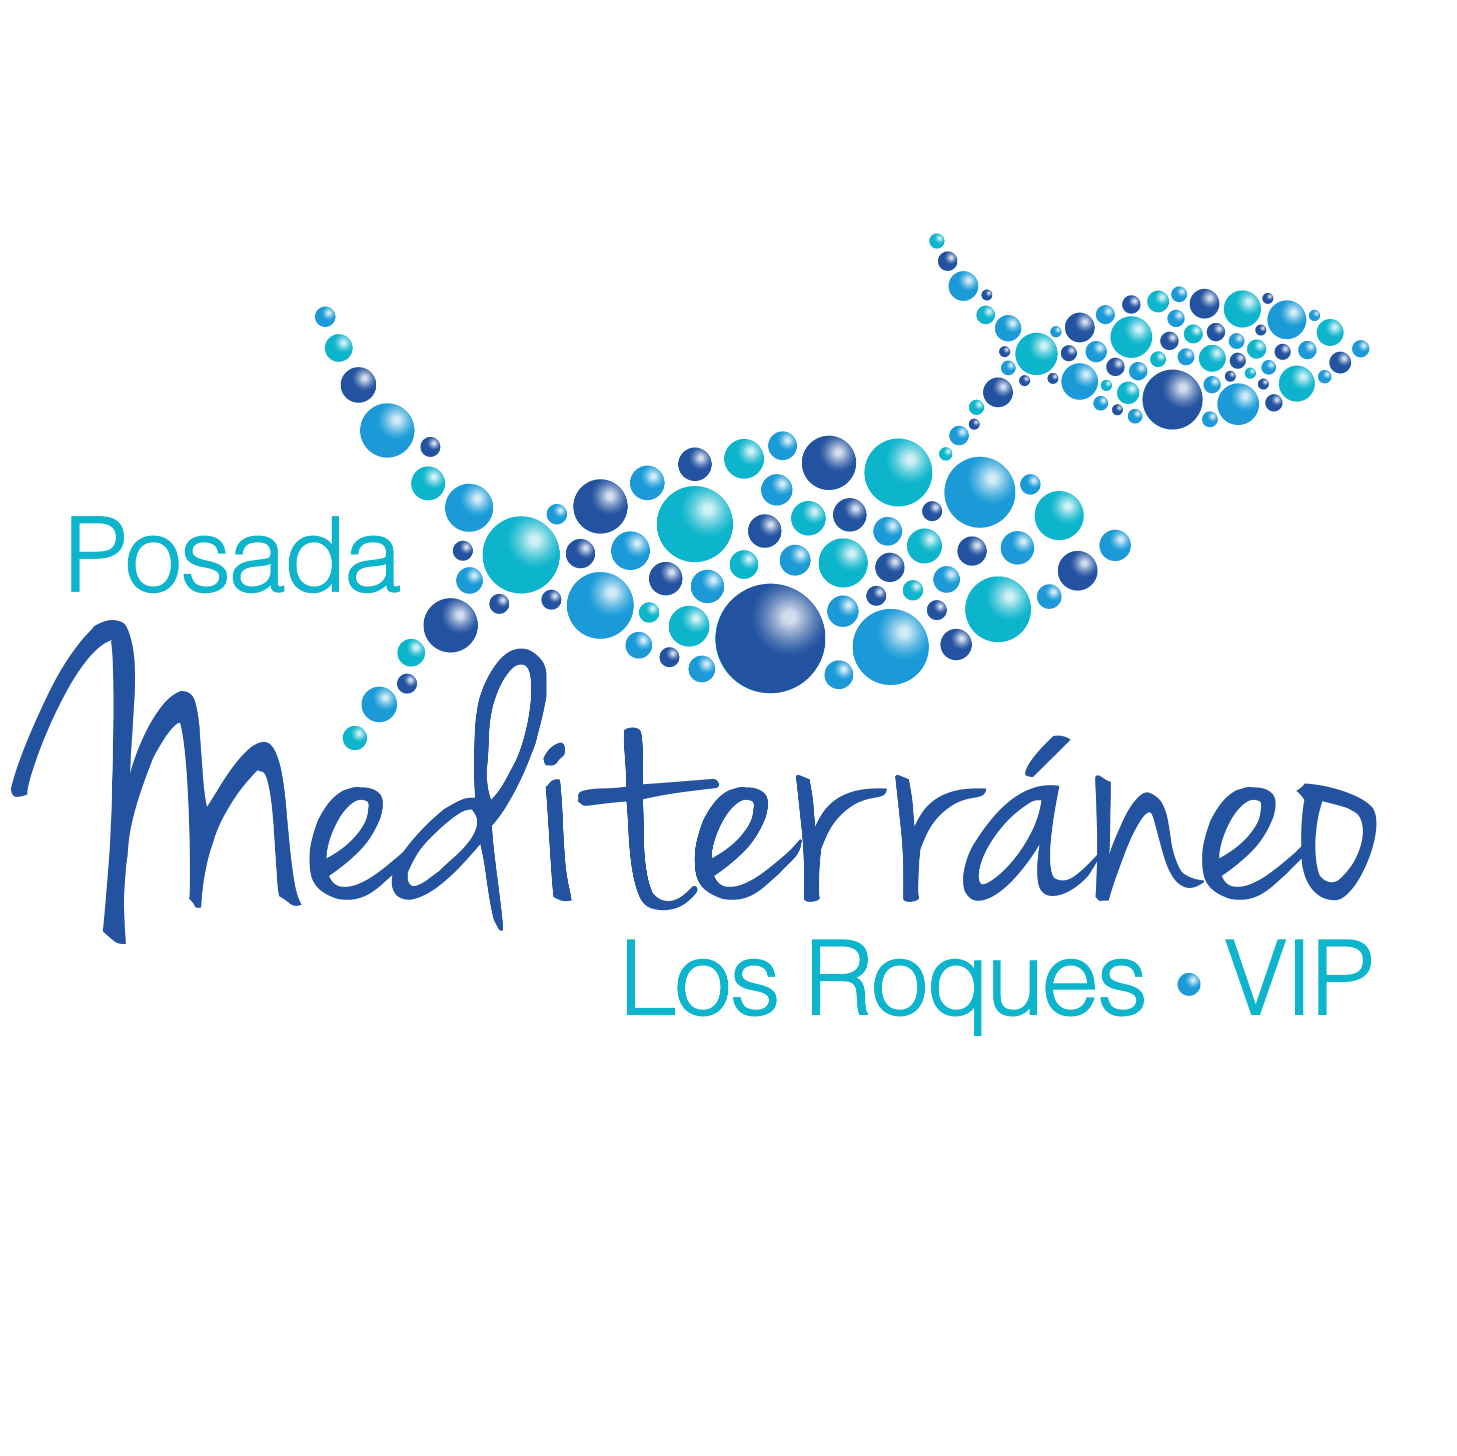 💙 El mejor lugar para disfrutar del Archipiélago 😎 🏖 de Los Roques. ventas@posadamediterraneo.com.ve
+58414312671
+584142297695